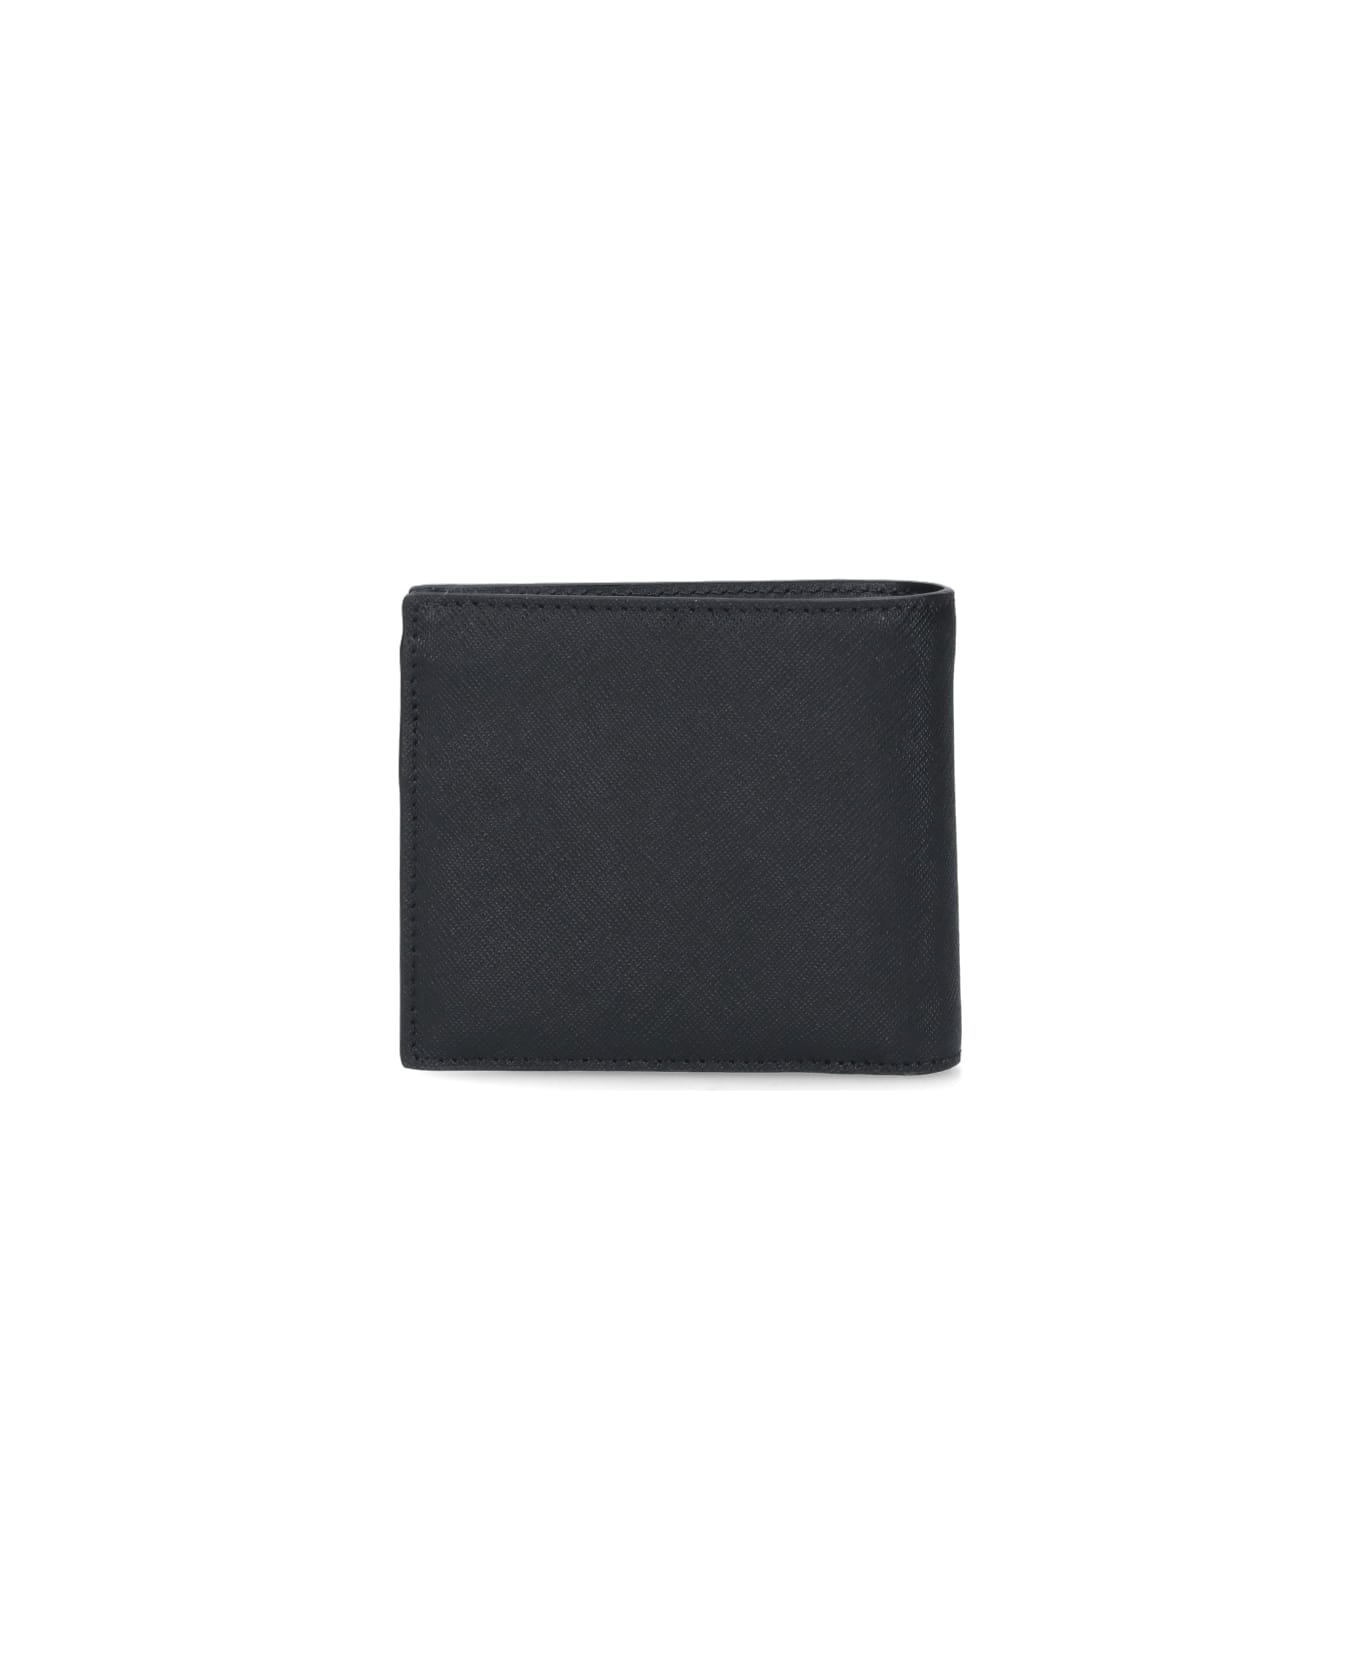 Vivienne Westwood "orb" Logo Wallet - Black   財布